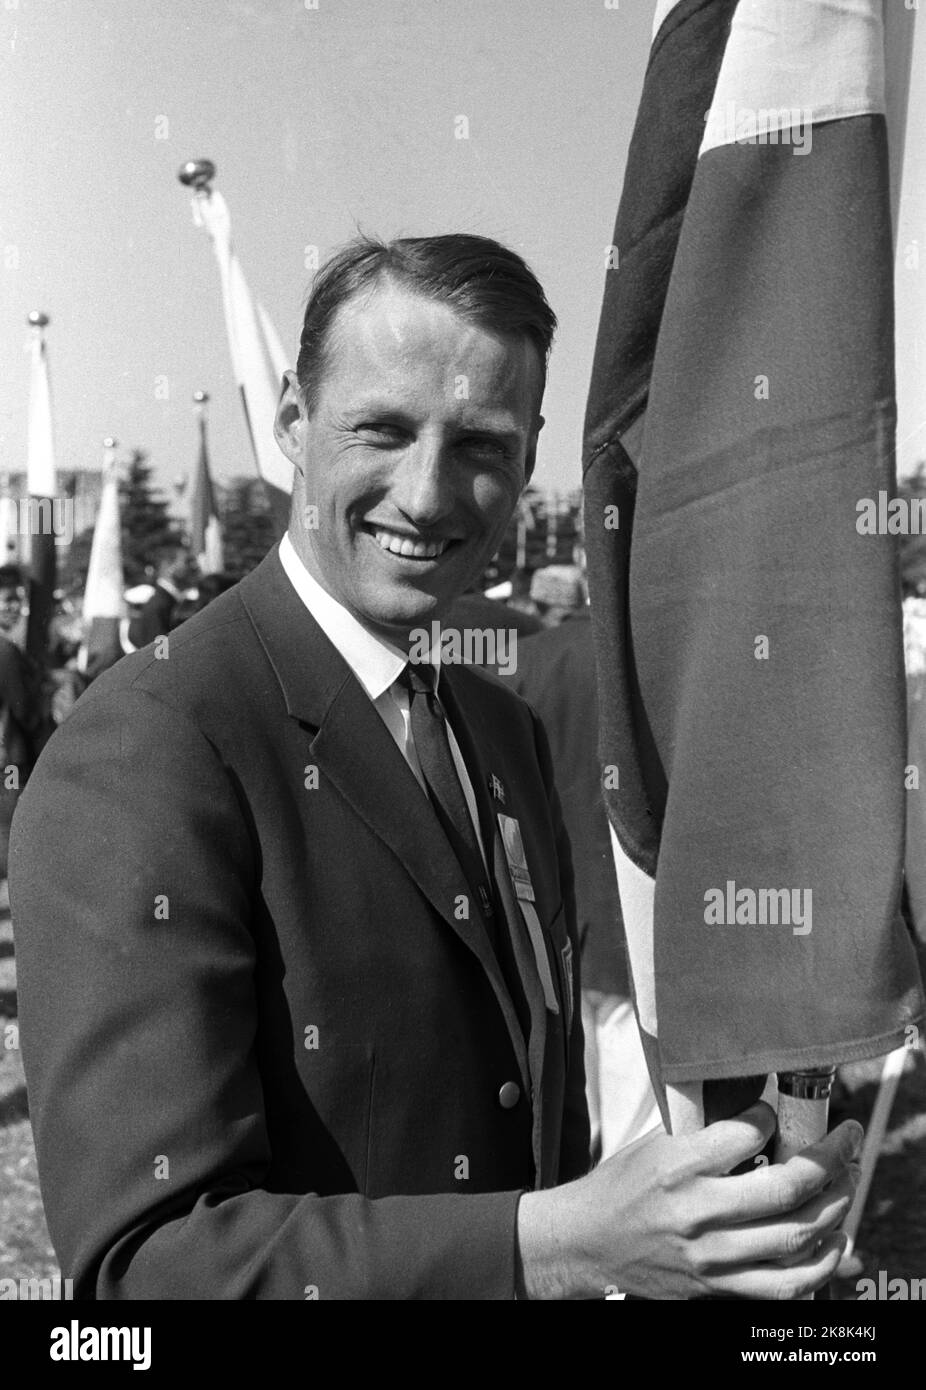 Tokyo, Japon 1964. Jeux olympiques d'été à Tokyo. Le prince héritier Harald est le porte-drapeau de l'équipe norvégienne lors de la cérémonie d'ouverture. Le Prince héritier participe à l'équipe olympique en voile. Photo archive NTB / ntb Banque D'Images